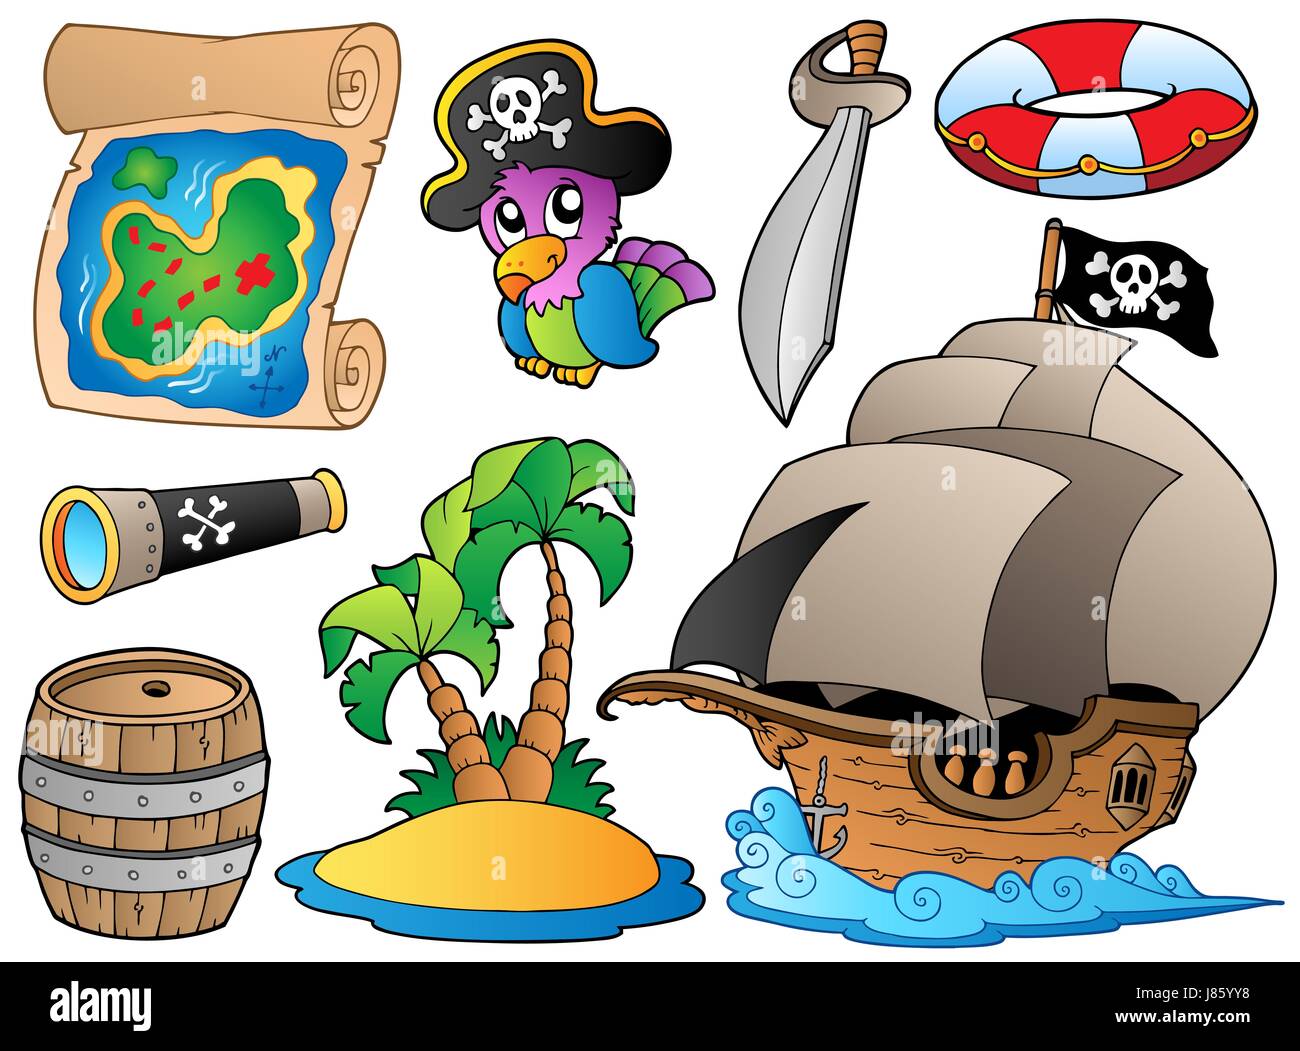 Предметы пиратов